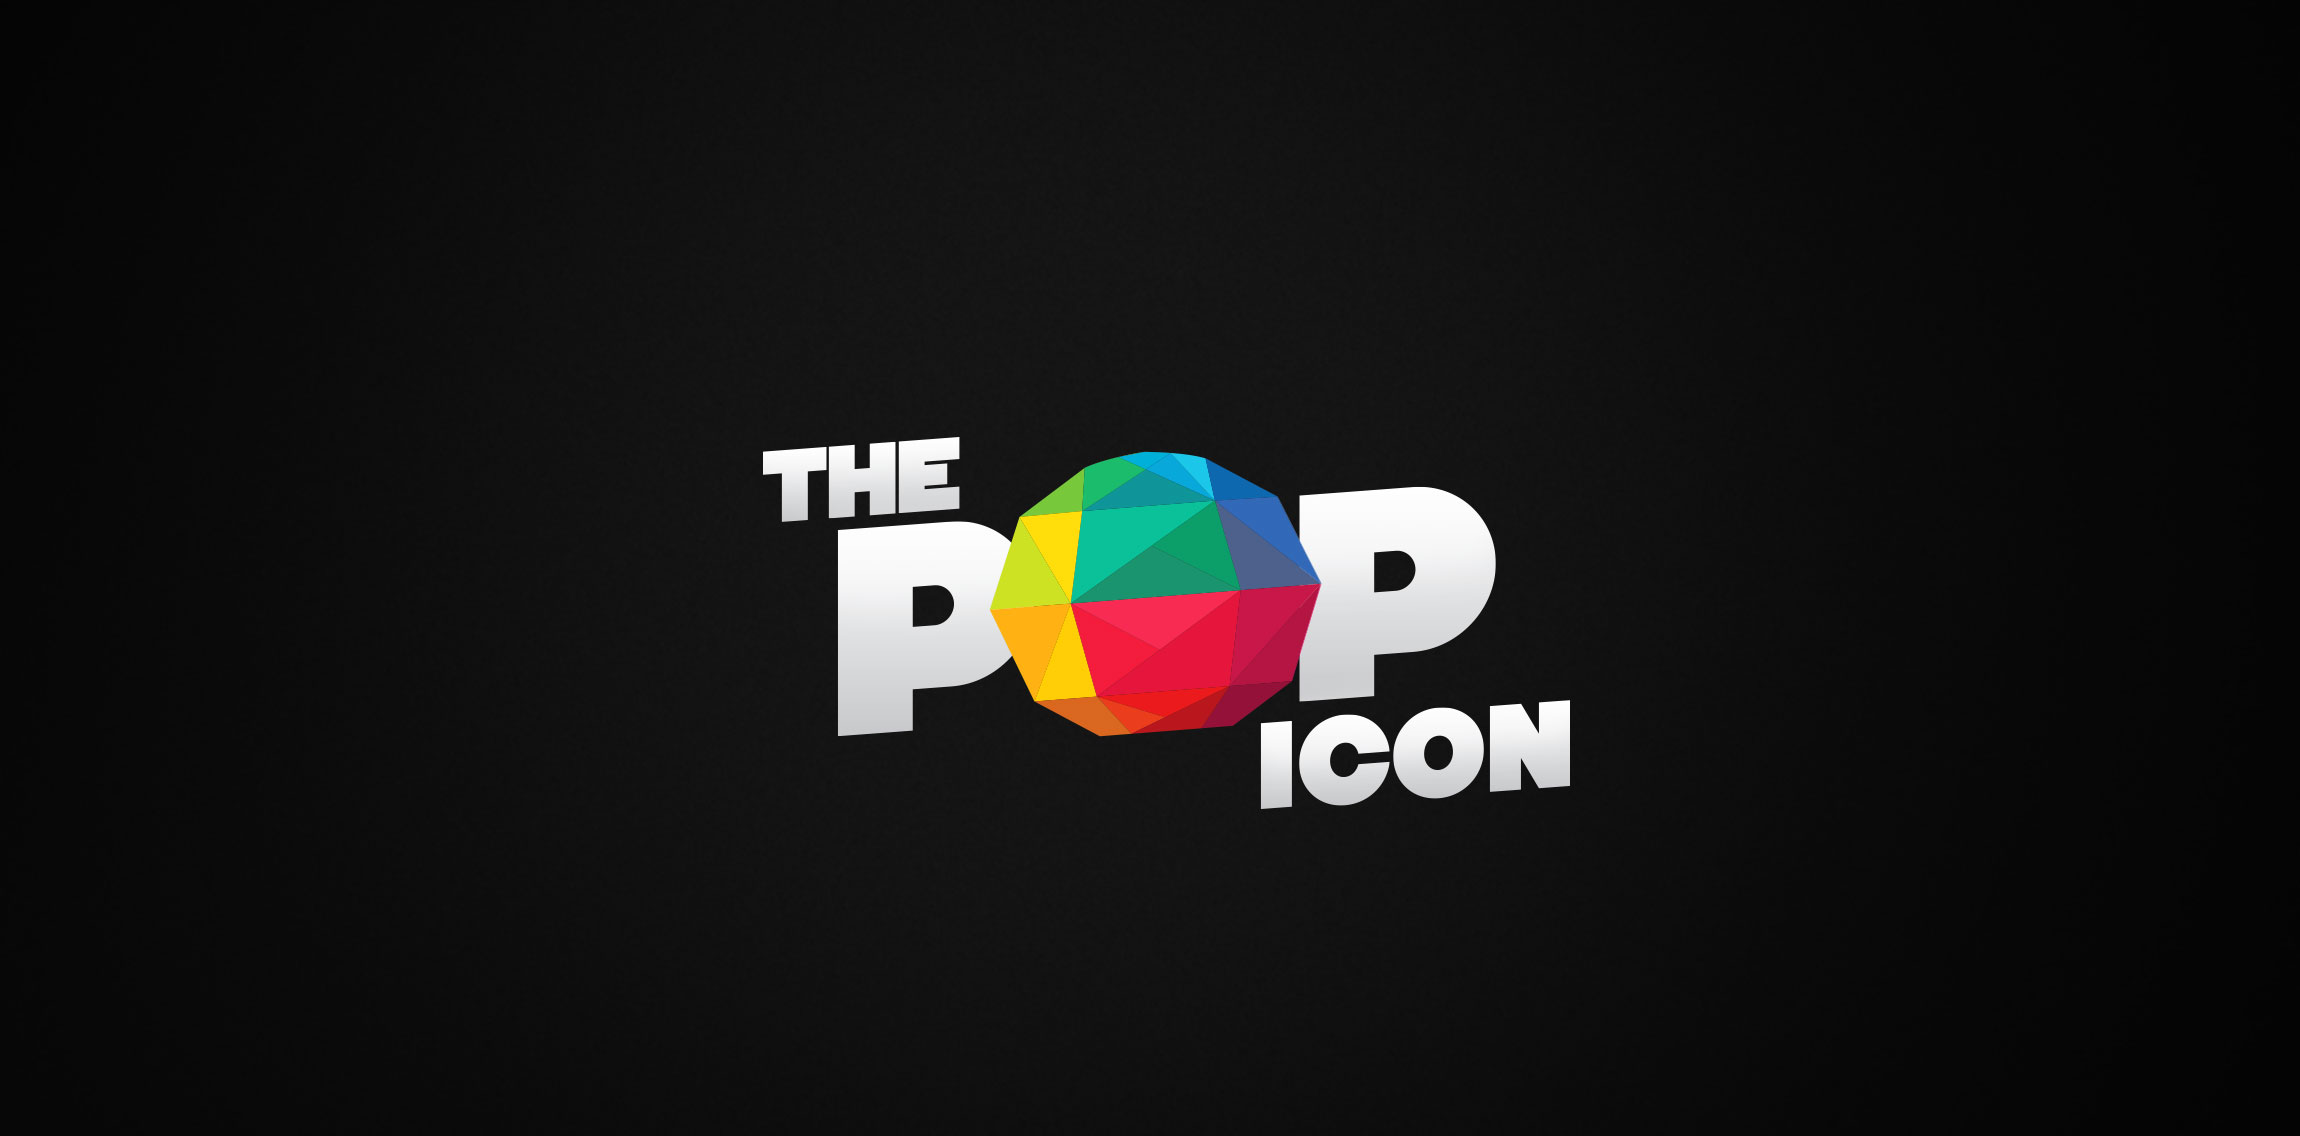 The Pop Icon